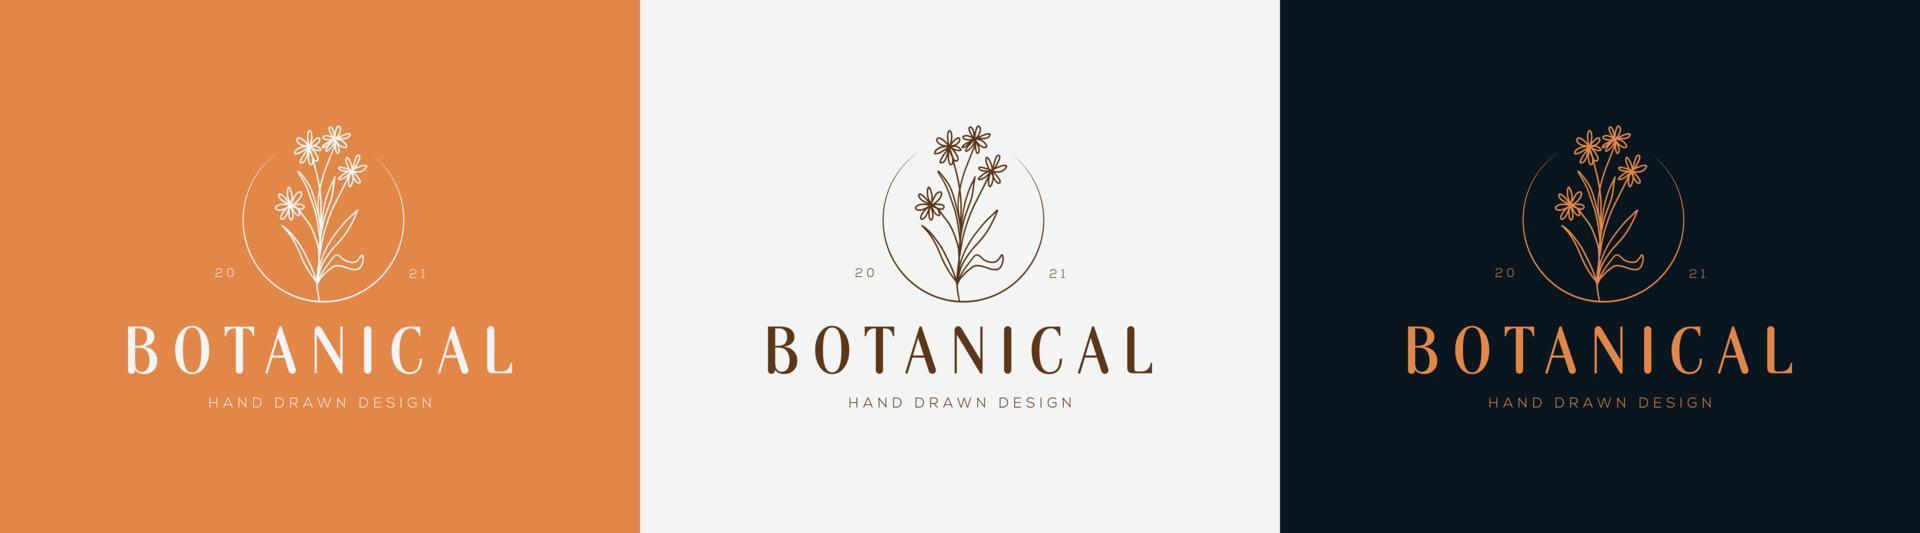 botanisches florales element handgezeichnetes logo mit wilden blumen und blättern. logo für spa- und schönheitssalon, boutique, bioladen, hochzeit, blumendesigner, innenausstattung, fotografie, kosmetik. vektor